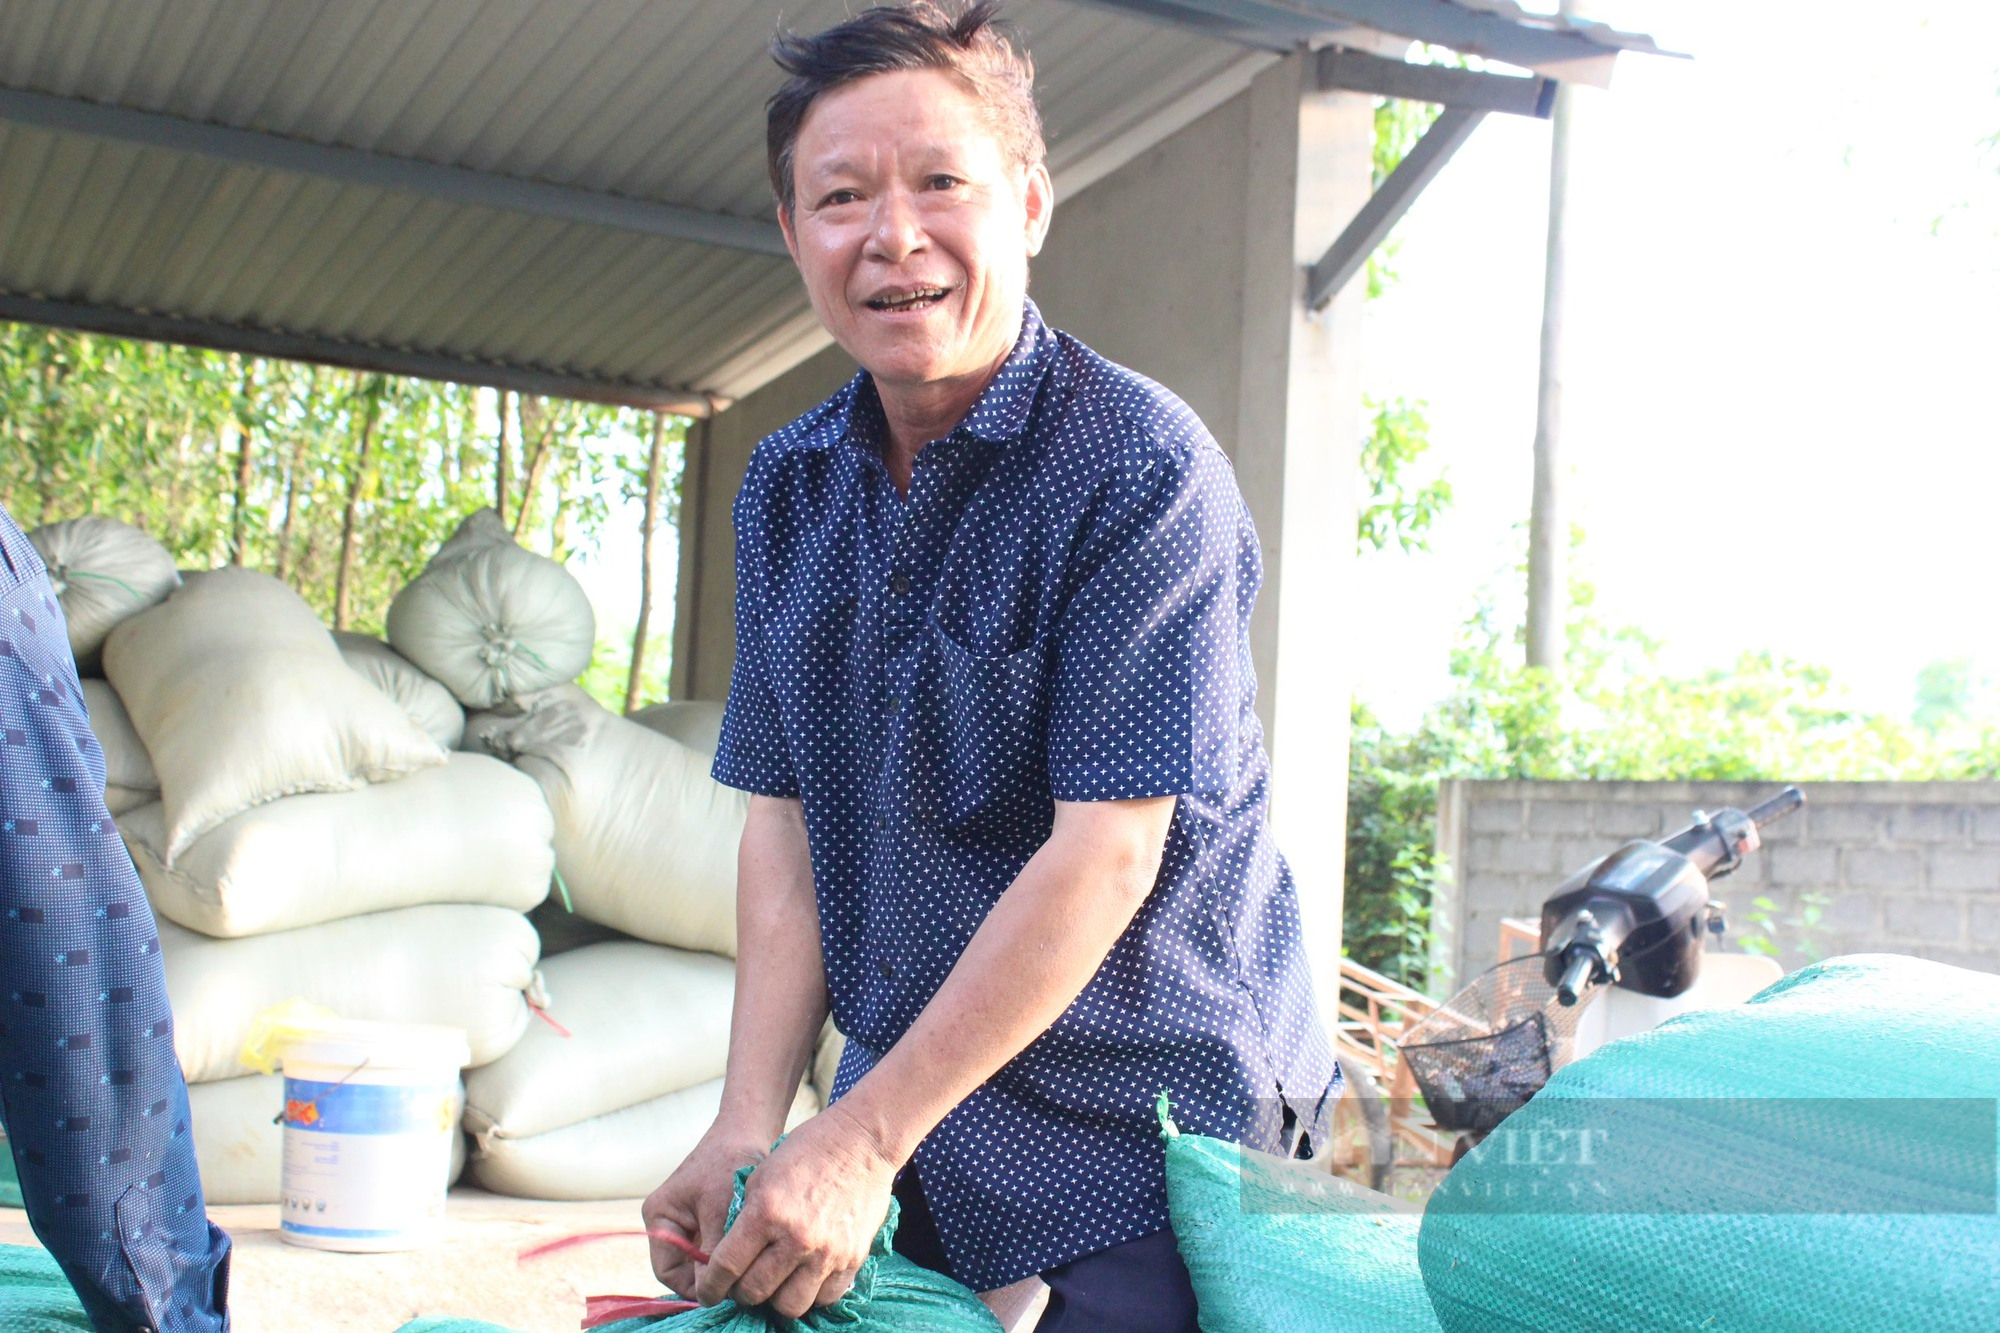 Quảng Bình: Công ty sông Gianh đồng hành cùng nông dân trồng lúa, giông lốc làm ngã rạp liền tới giúp gặt, thu mua luôn - Ảnh 2.